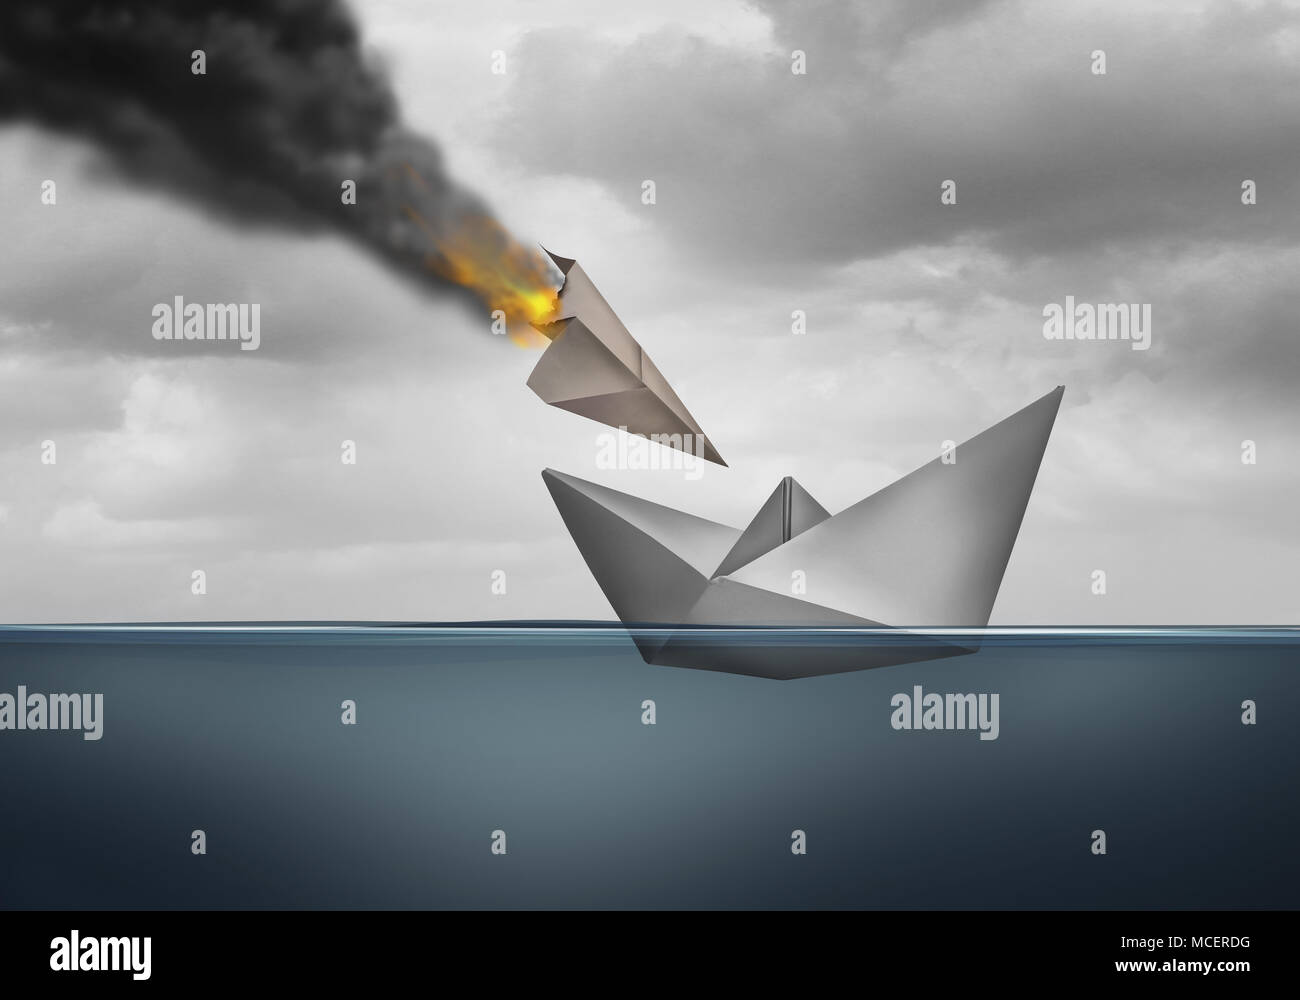 Sicherheitsanfälligkeit Konzept und gefährdete Unternehmen dar, da ein Angriff auf eine wehrlose Schiff mit 3D-Illustration Elemente. Stockfoto